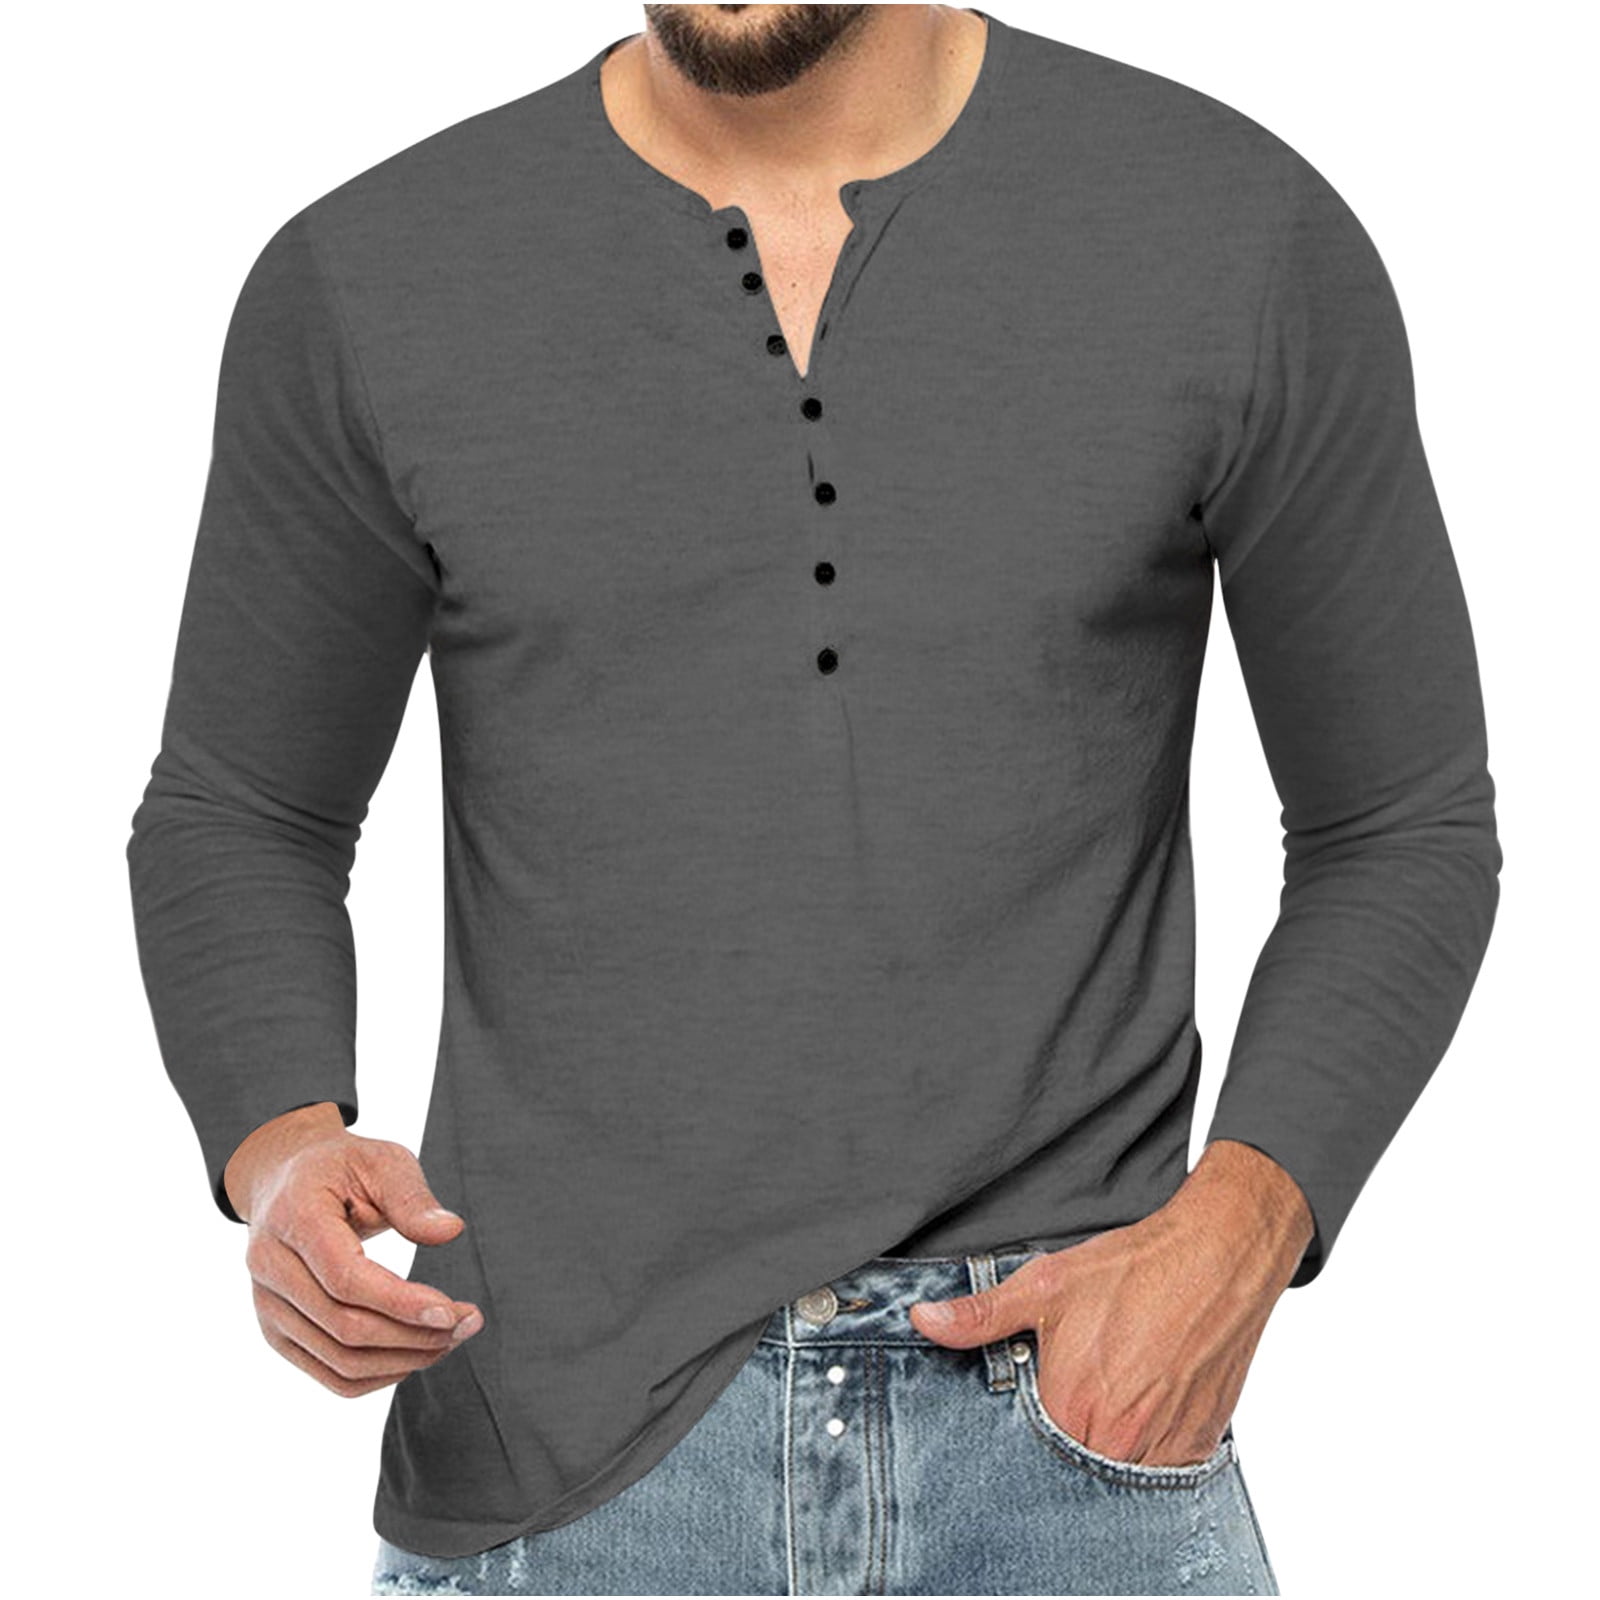 VSSSJ Men's Crewneck Button Flat Mouth Shirts Slim Fit Solid Color